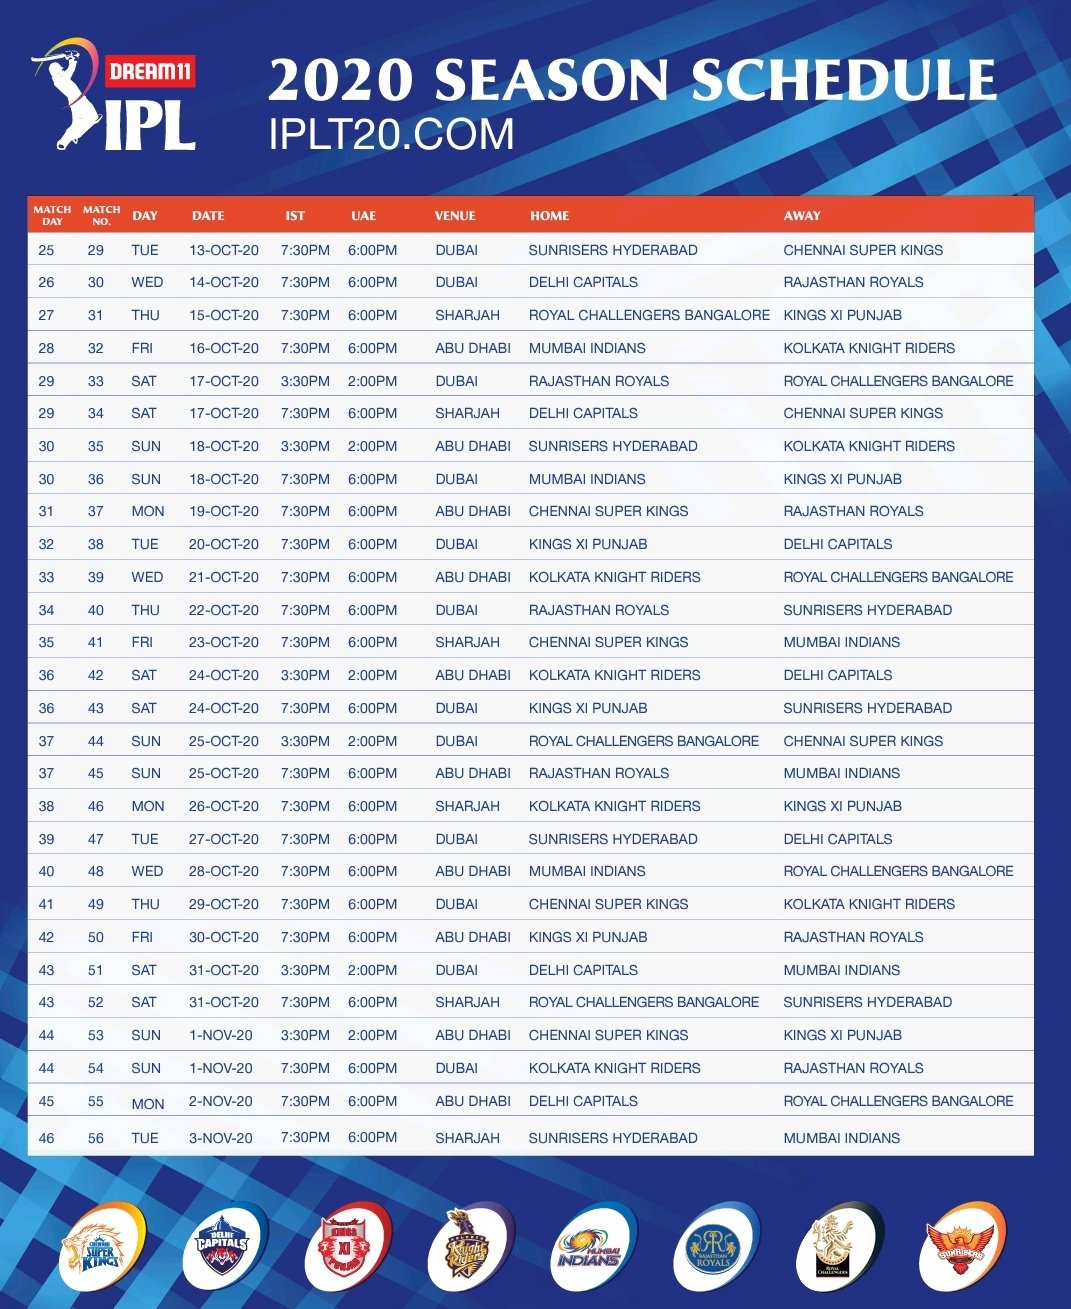 IPL 2020 schedule, ipl 2020 schedule uae, ipl 2020 schedule uae time table, ipl 2020 schedule news, ipl 2020 schedule update, ipl 2020 schedule uae list, ipl 2020 schedule pdf